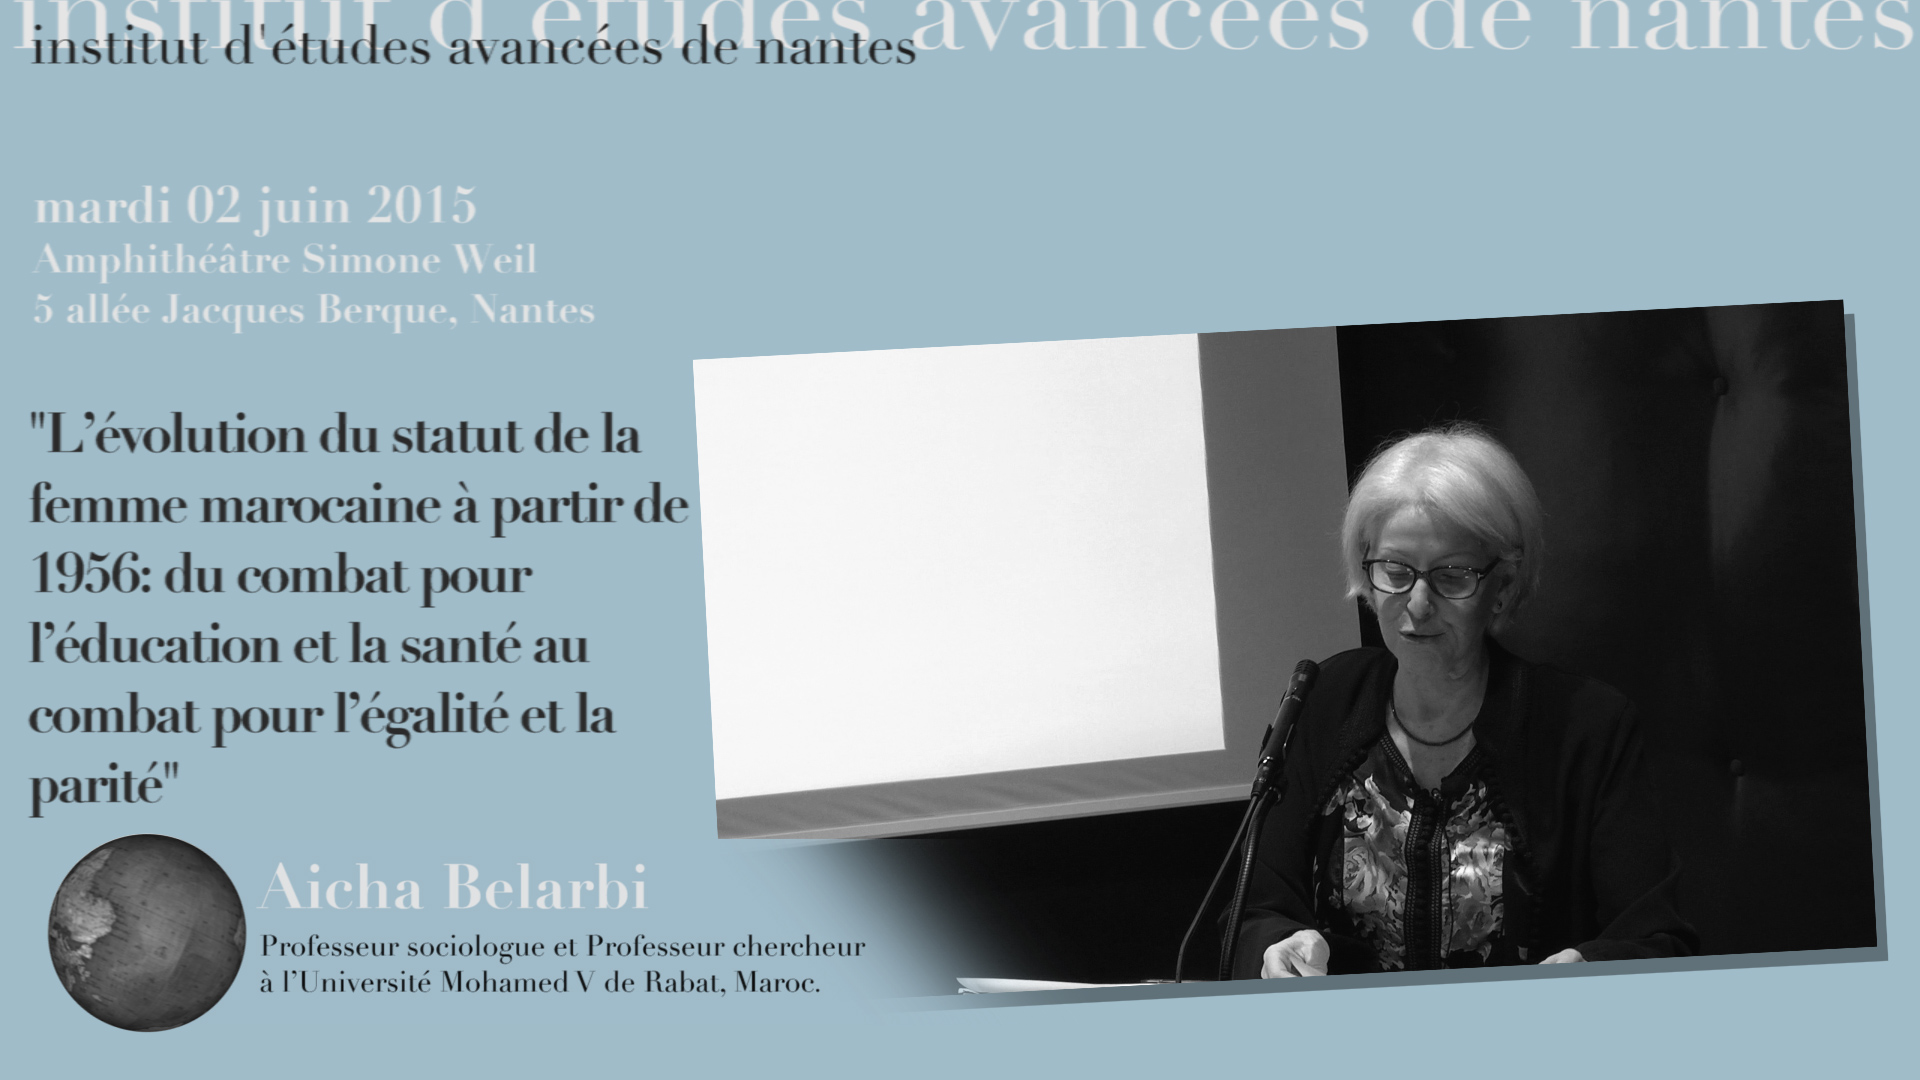 Aicha Belarbi : "L'évolution du statut de la femme marocaine à partir de 1956: du combat pour l’éducation et la santé au combat pour l’égalité et la parité"